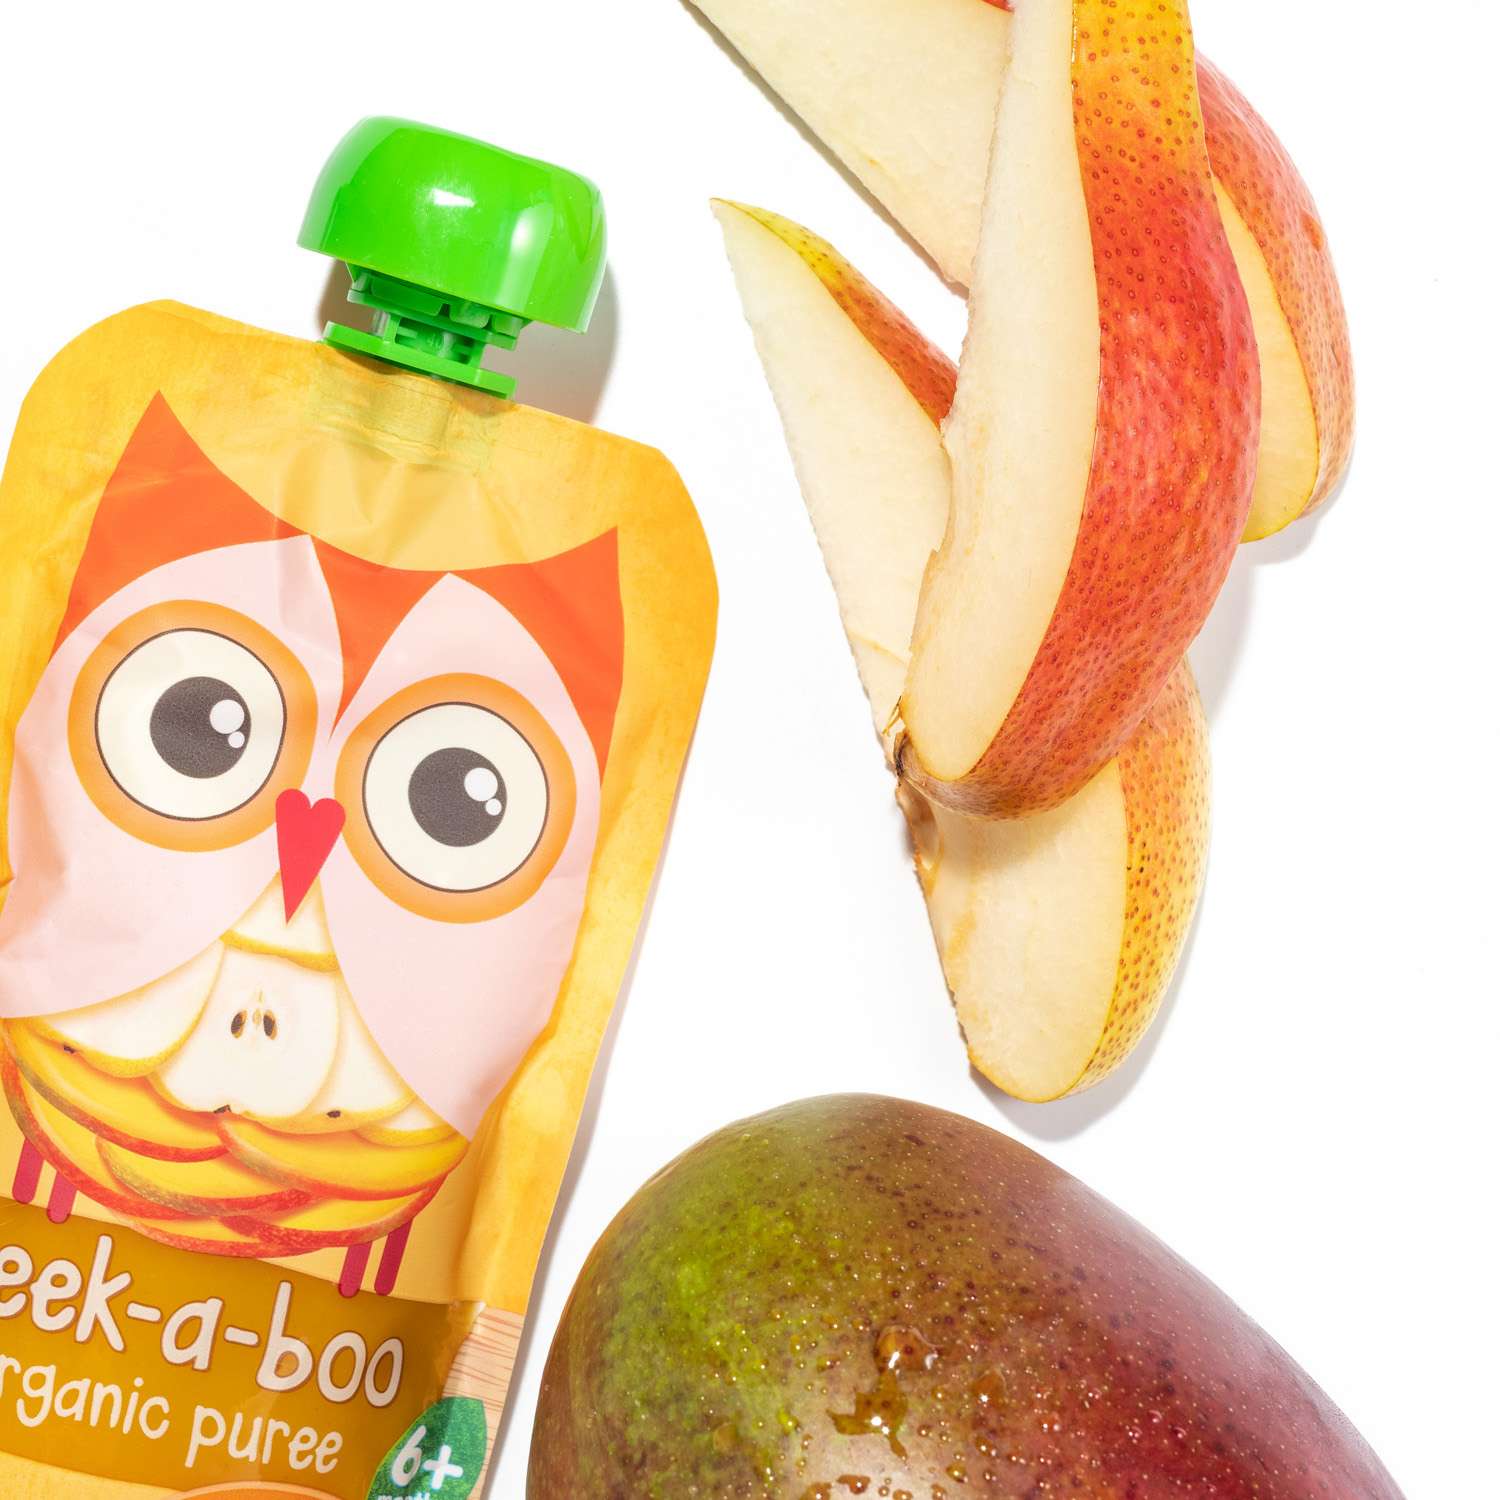 Пюре фруктовое Peek-a-boo органическое с 6 мес органическое из груш и манго пикабу 12шт х 113г - фото 2